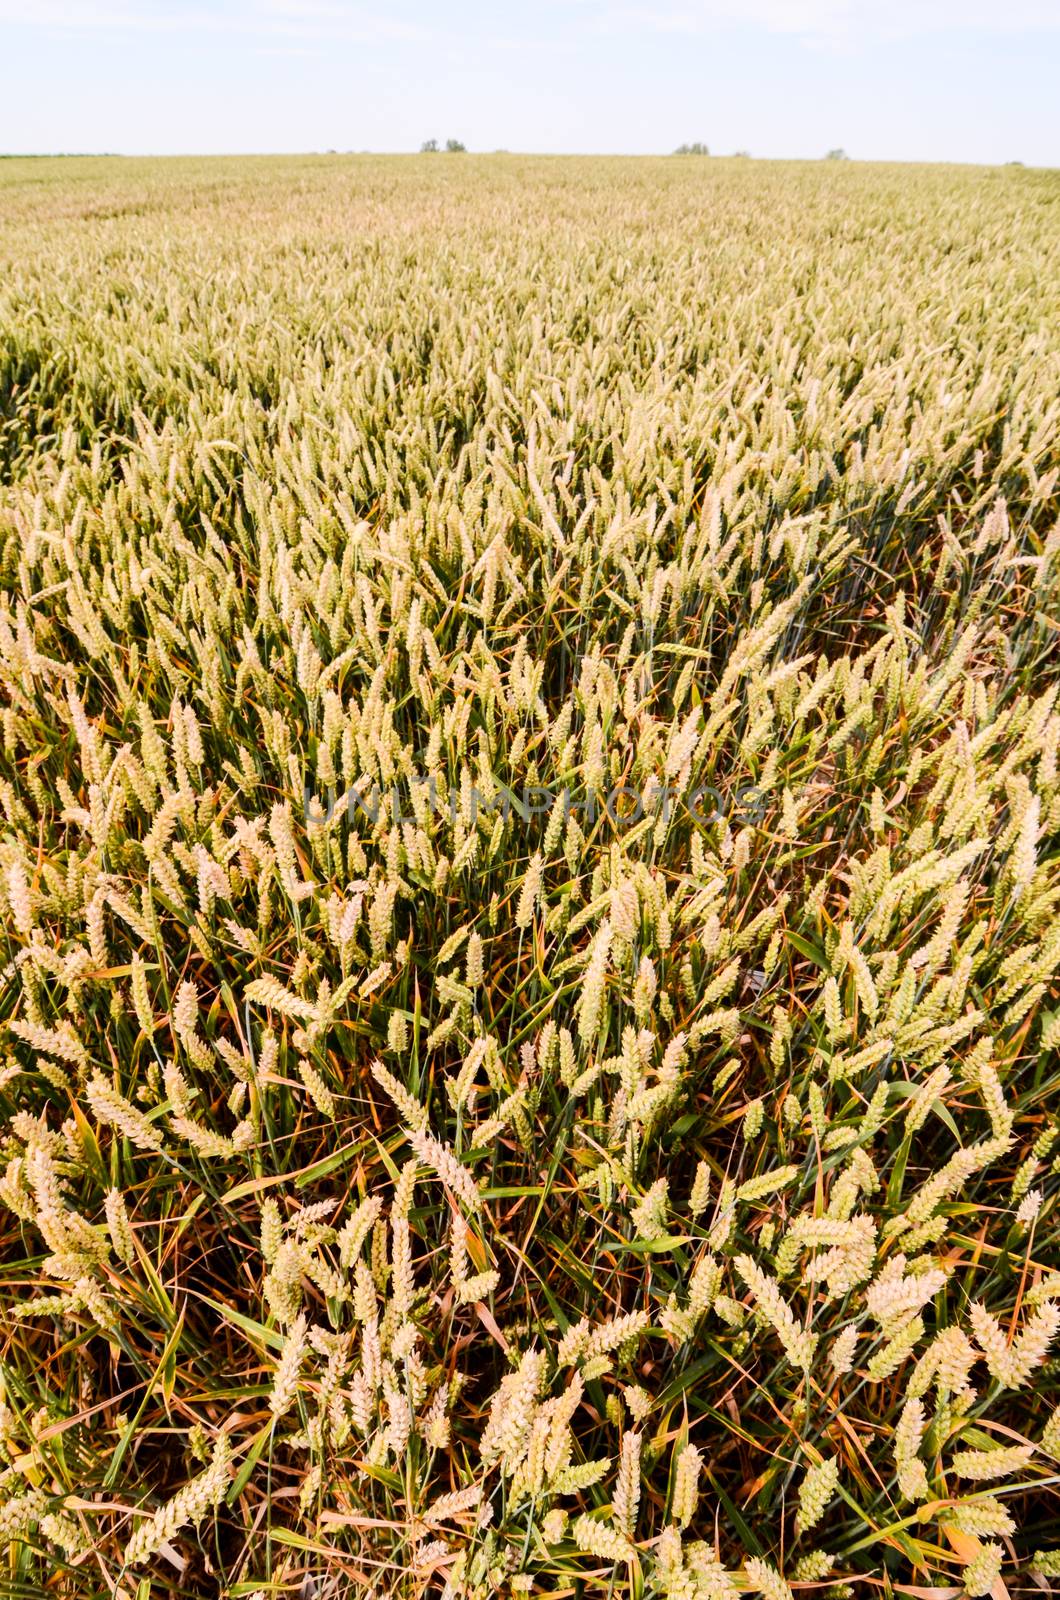 Textured Wheat Field by underworld